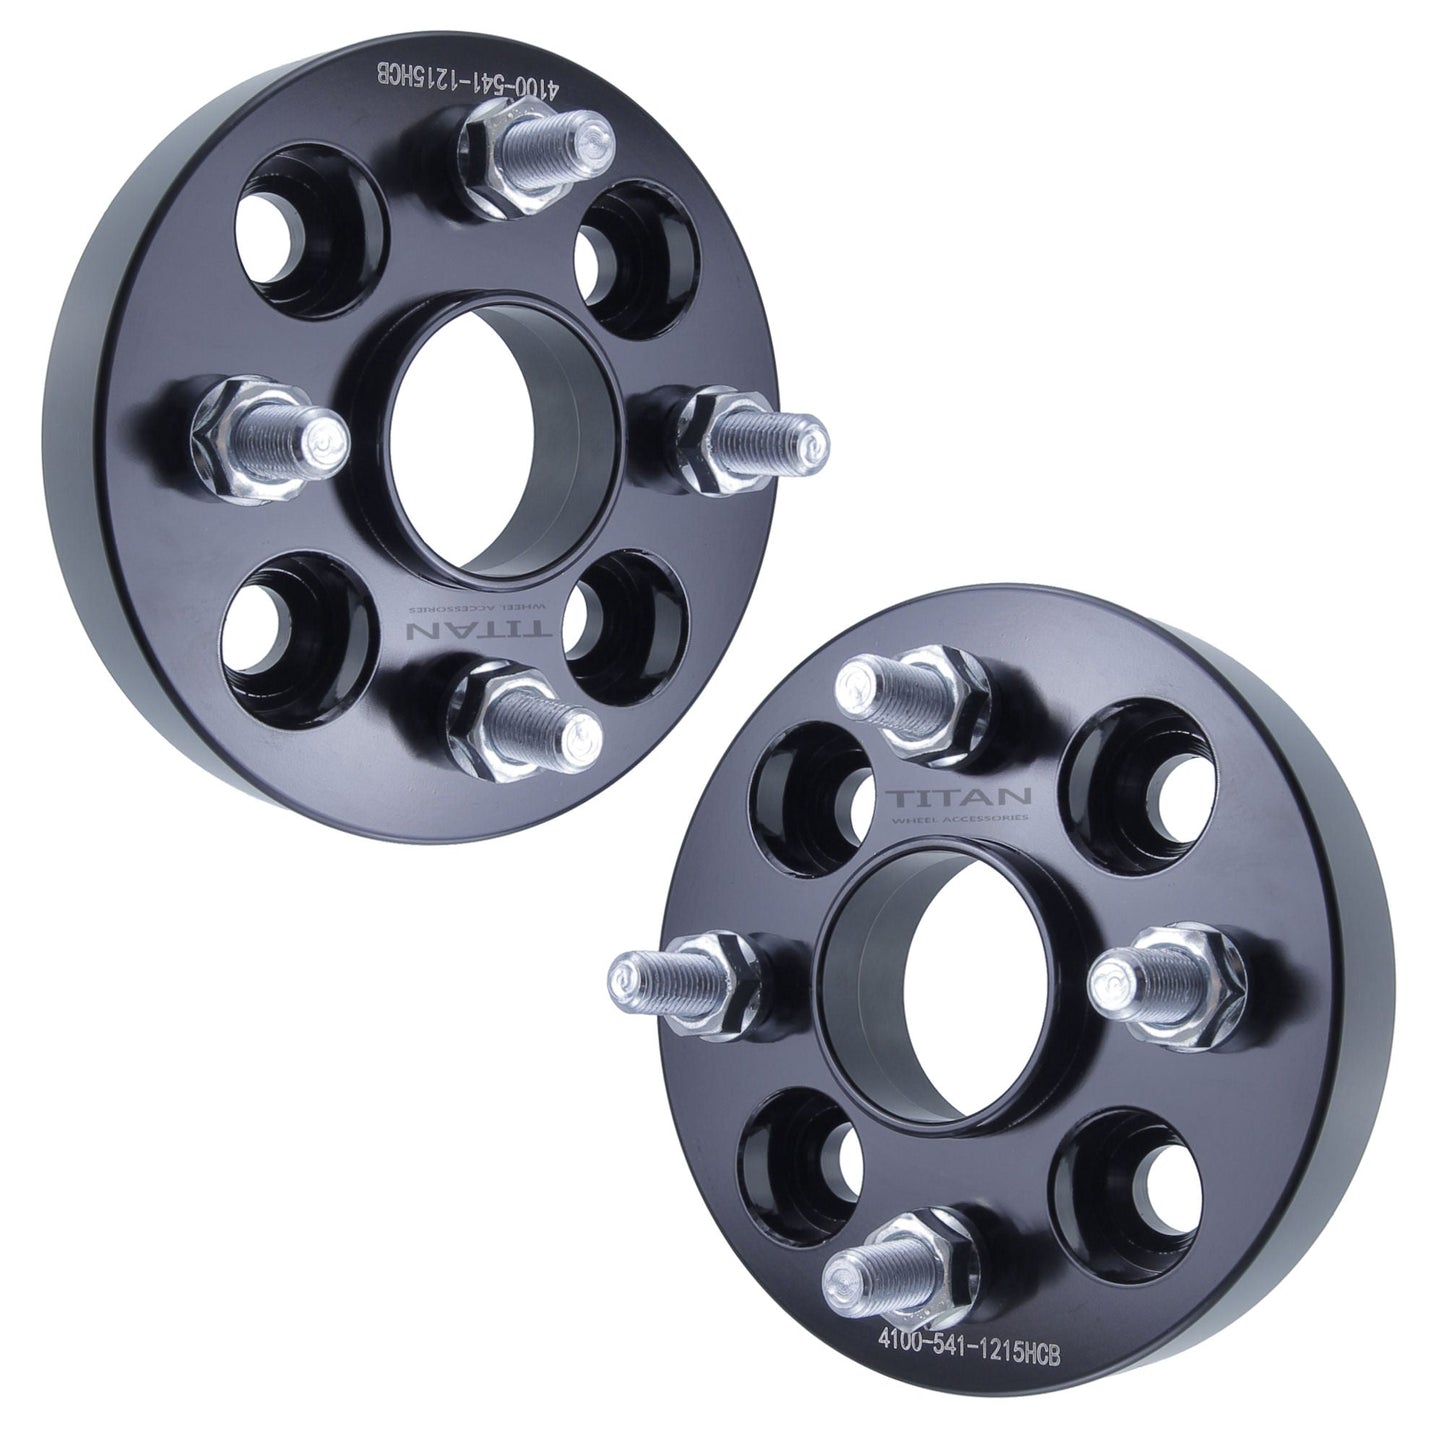 20mm Titan Wheel Spacers for Mazda Miata Scion xB Toyota MR2 Celica | 4x100 | 54.1 Hubcentric | 12x1.5 Studs |  Set of 4 | Titan Wheel Accessories